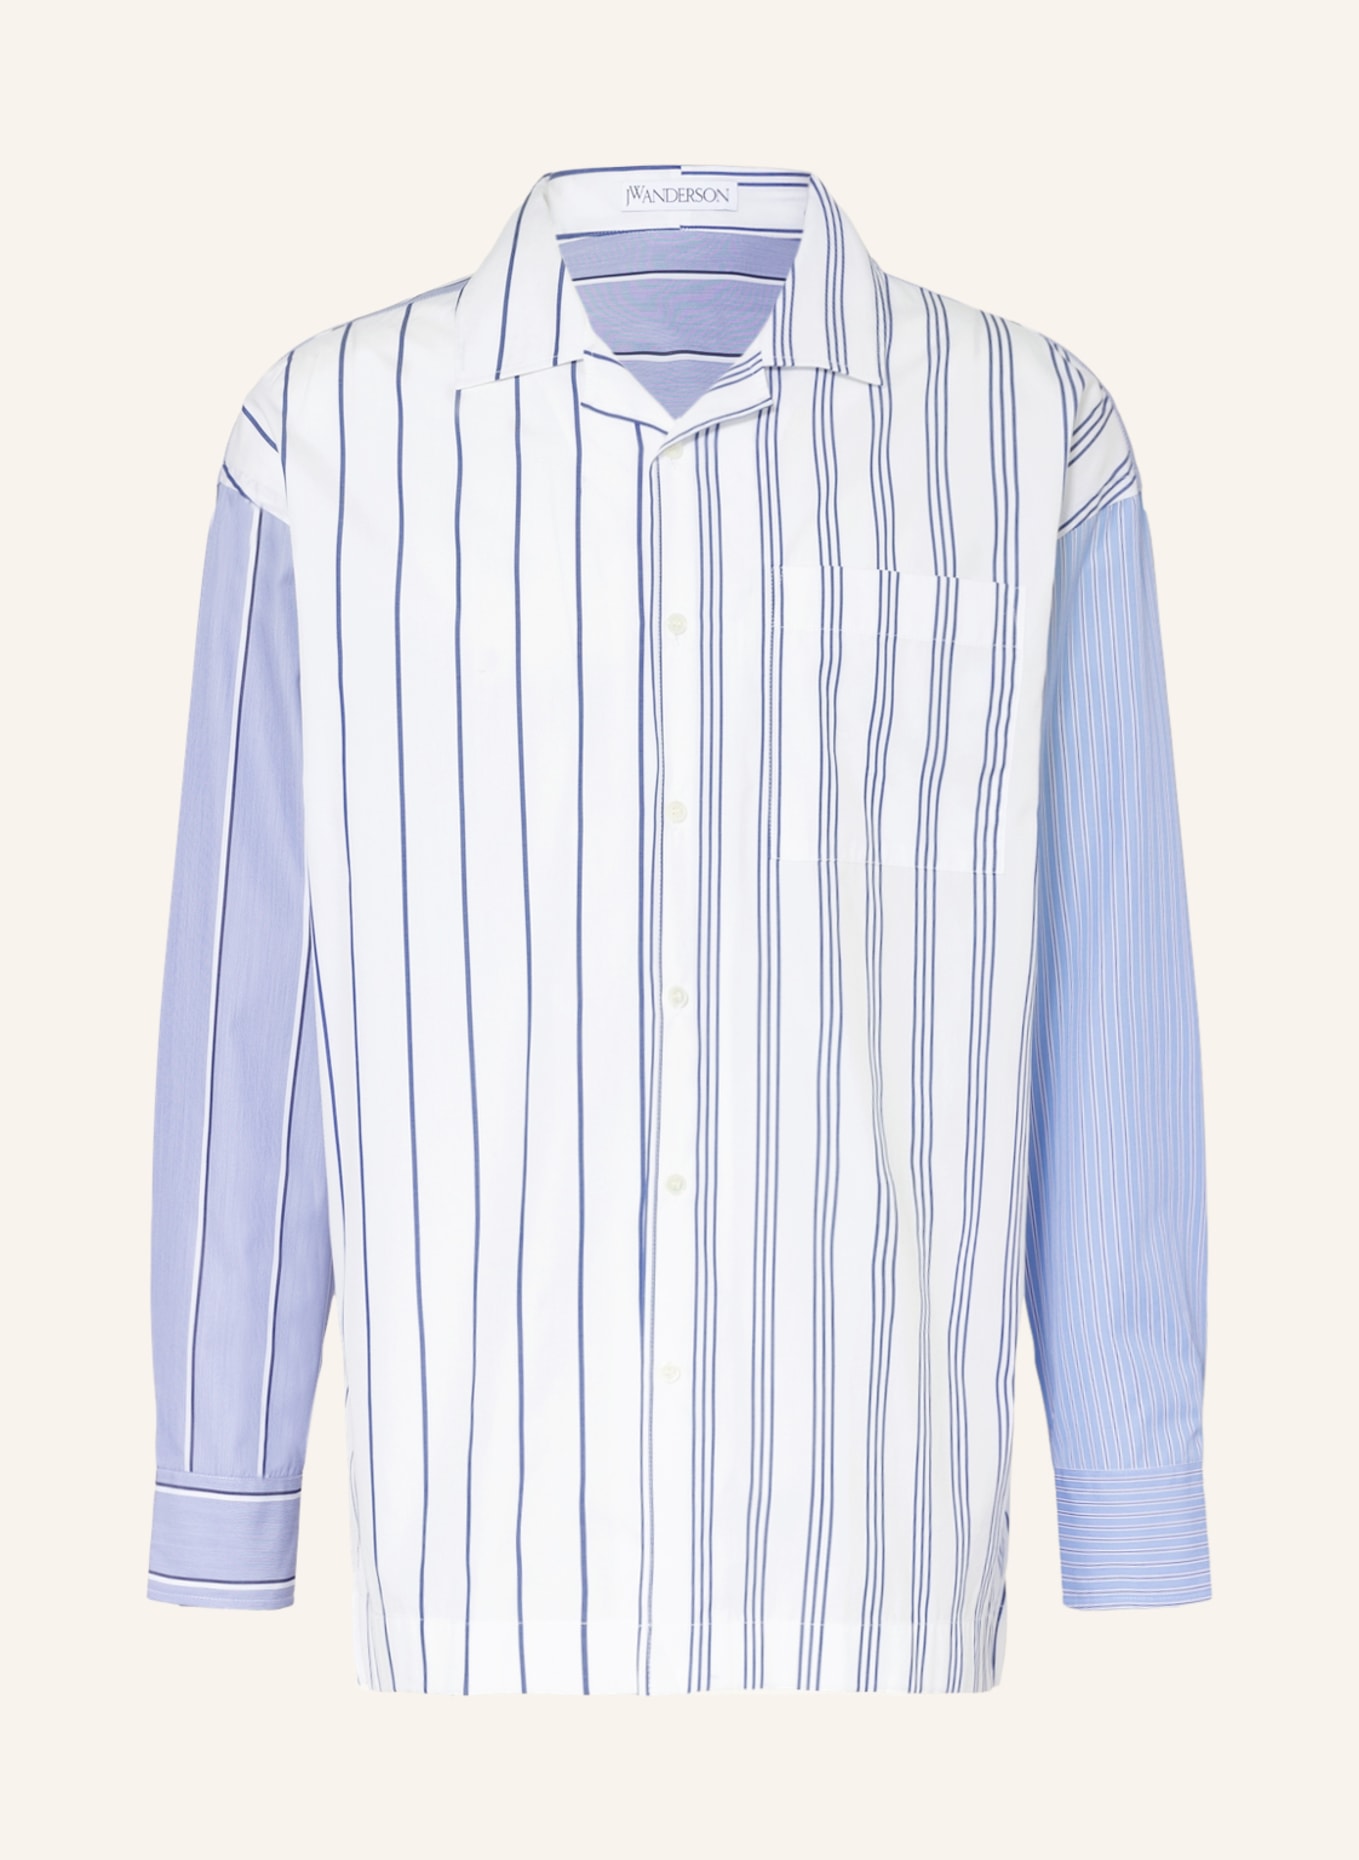 JW ANDERSON Hemd Relaxed Fit, Farbe: WEISS/ BLAU/ HELLBLAU (Bild 1)